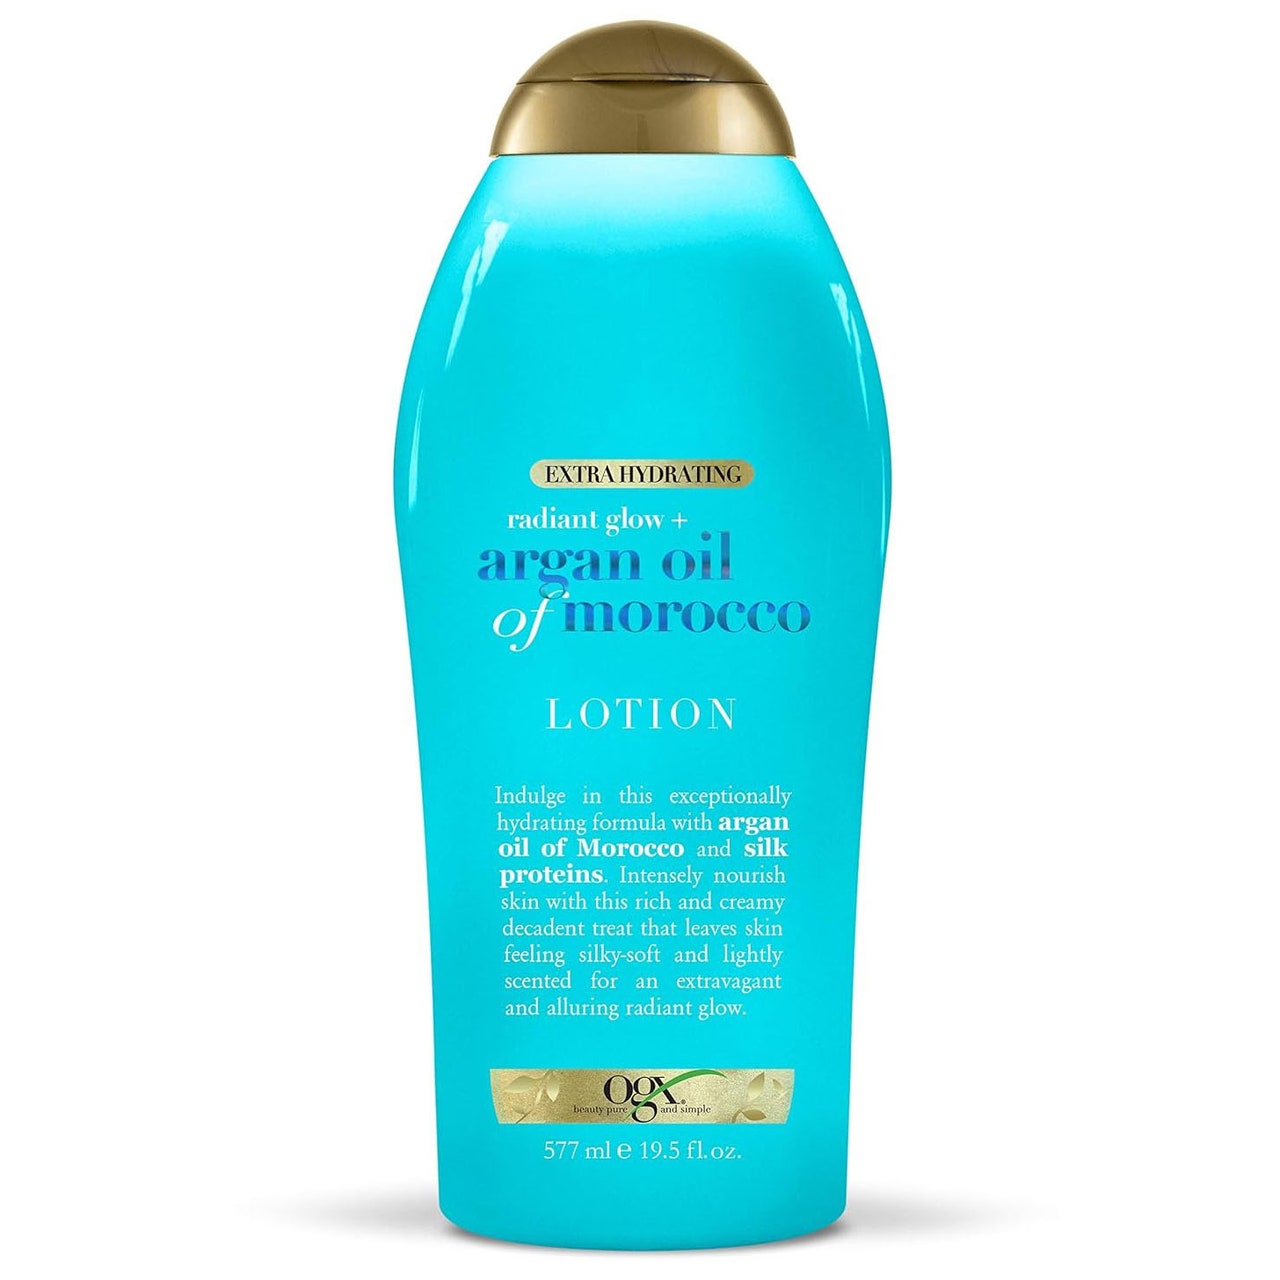 OGX Radiant Glow Body Lotion blaue Flasche mit goldenem Verschluss auf weißem Hintergrund